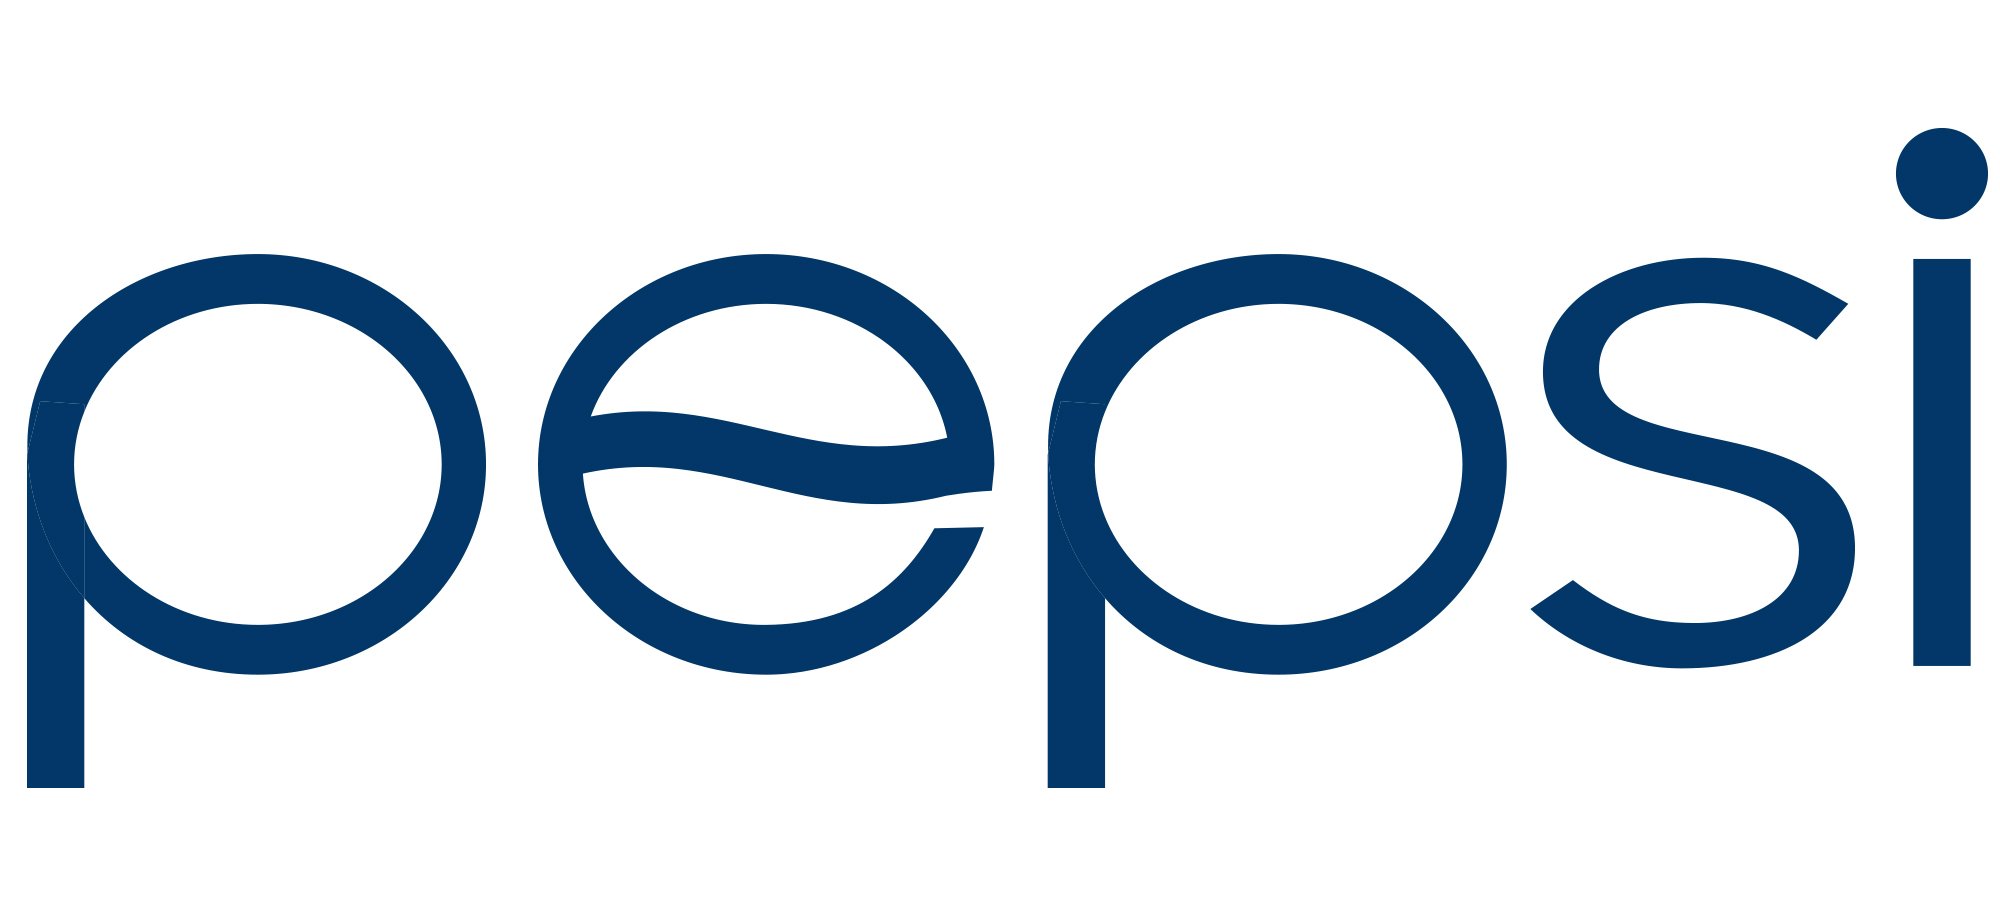 pepsi logo white text download